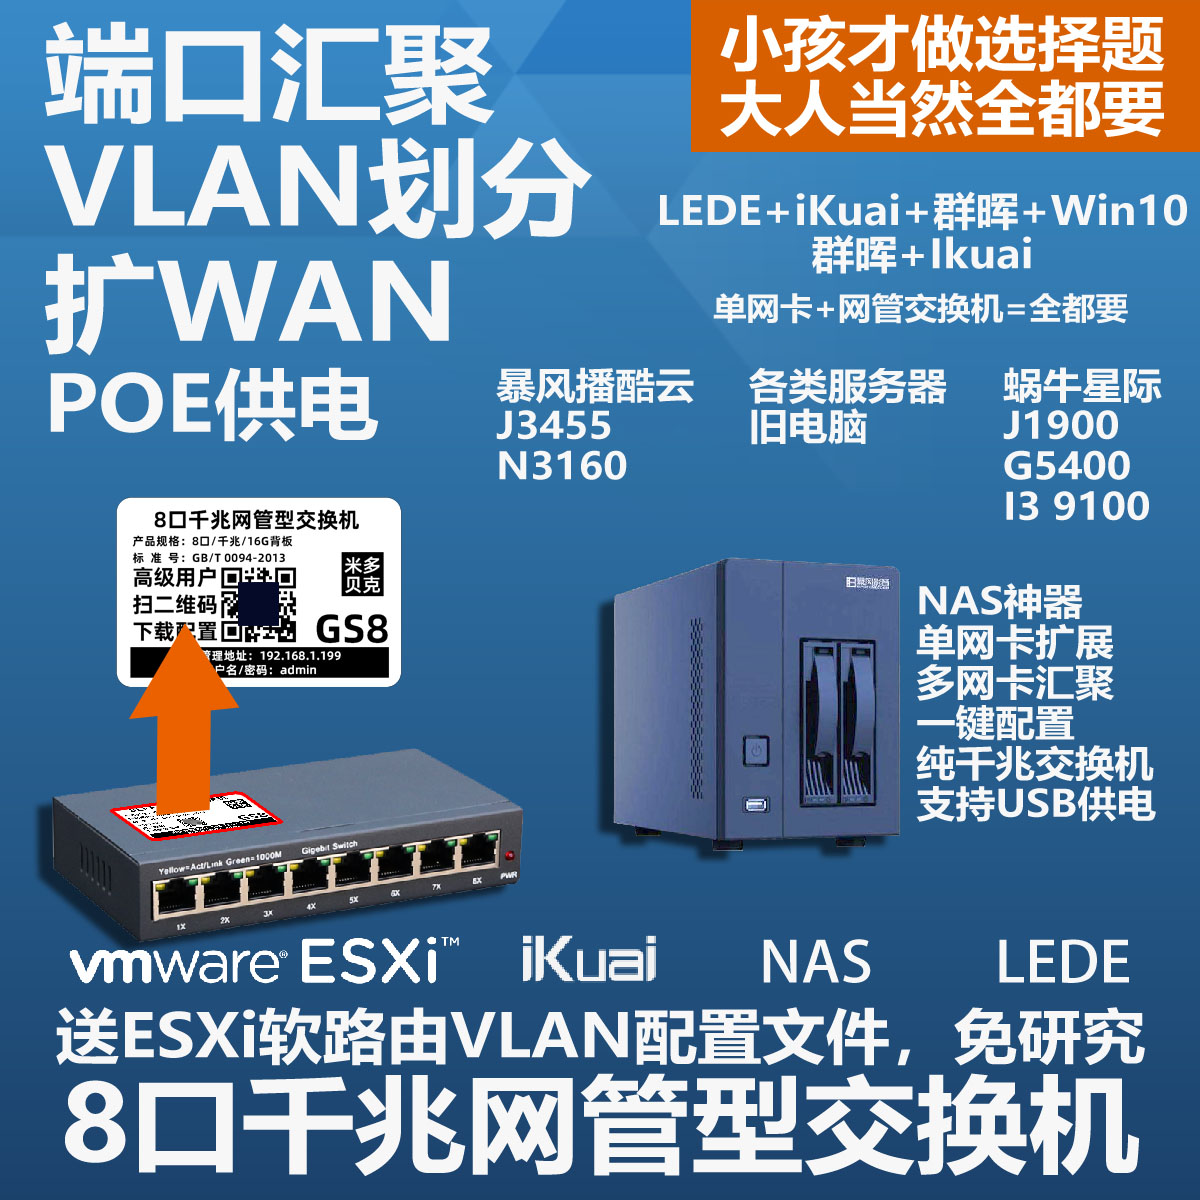 支持USB取电，最小的管理型交换机 0.3w超低功耗 虚拟机 ESXi 软路由 群晖 划VLAN 端口汇聚 8口千兆 网管 交换机缩略图